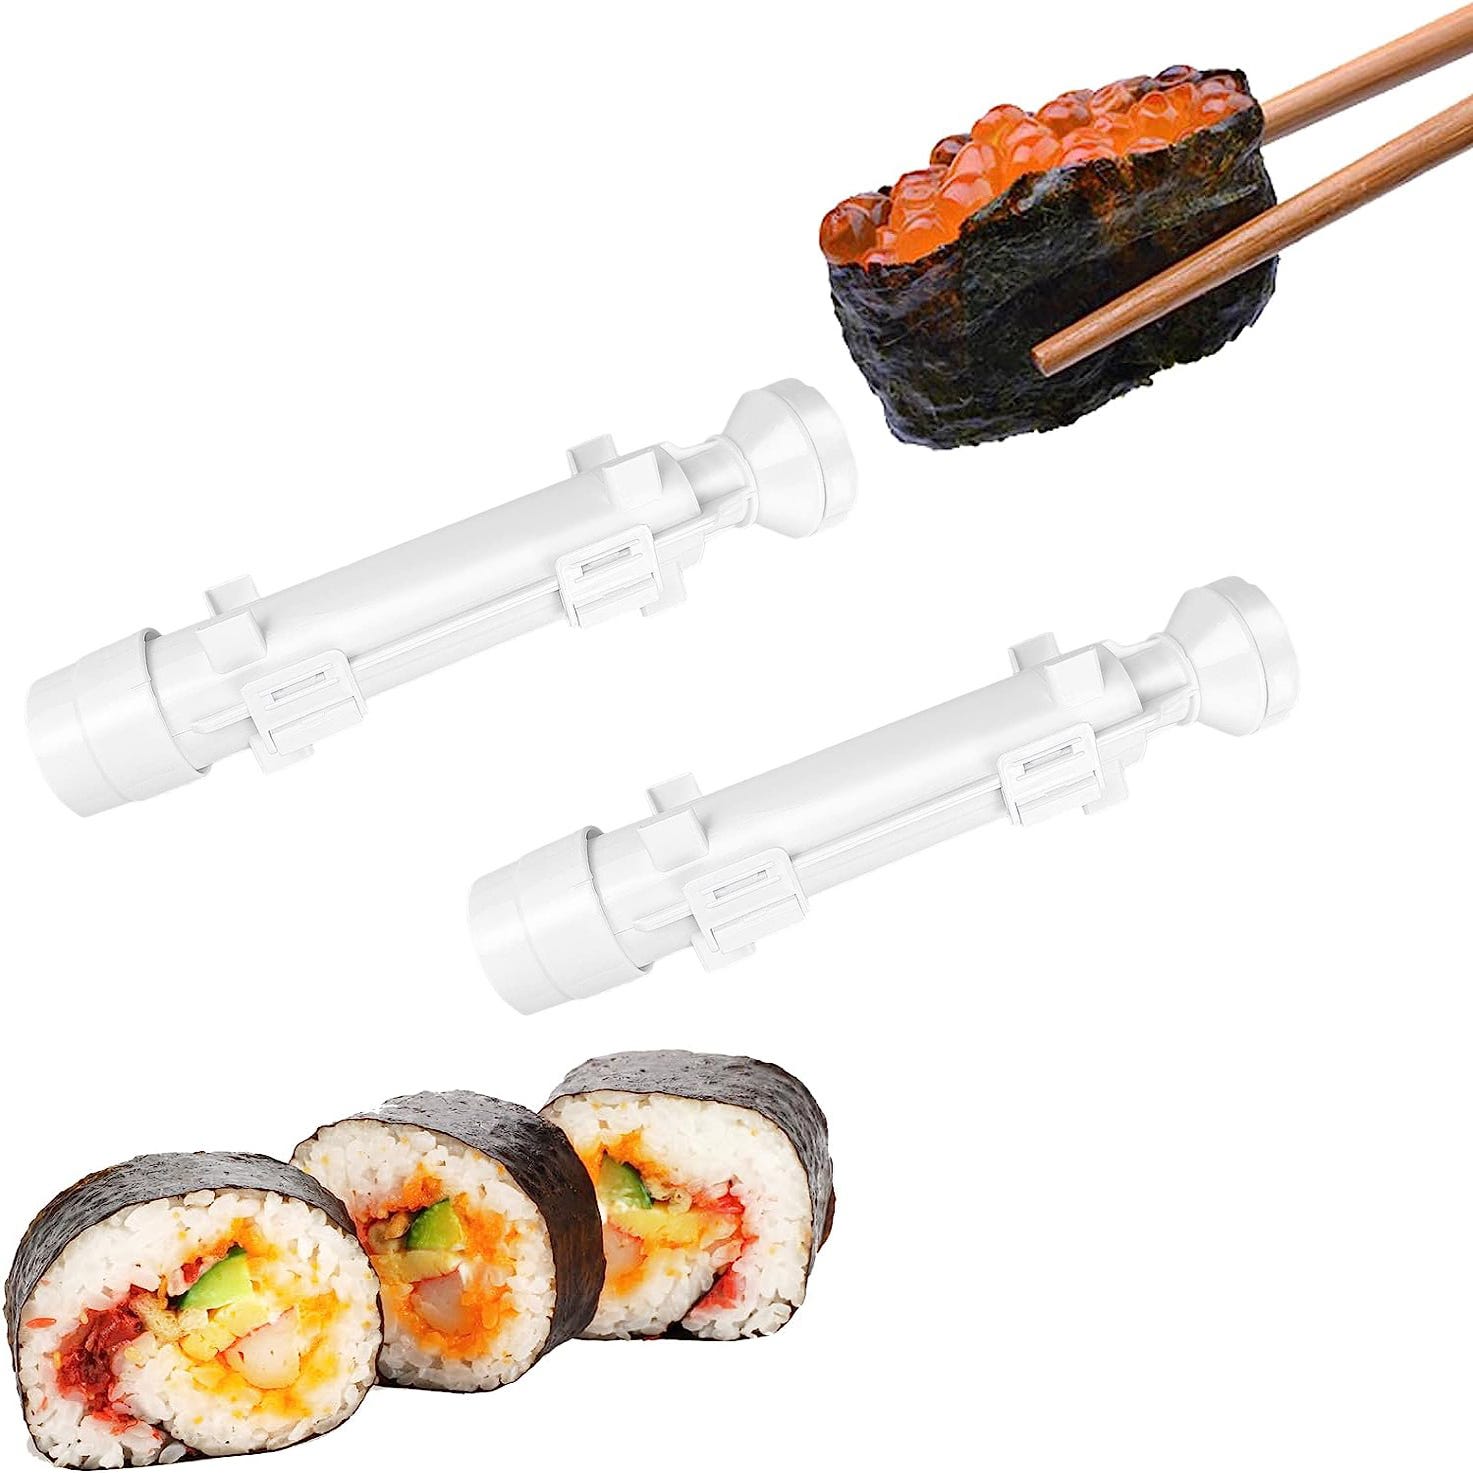 Machine a sushi